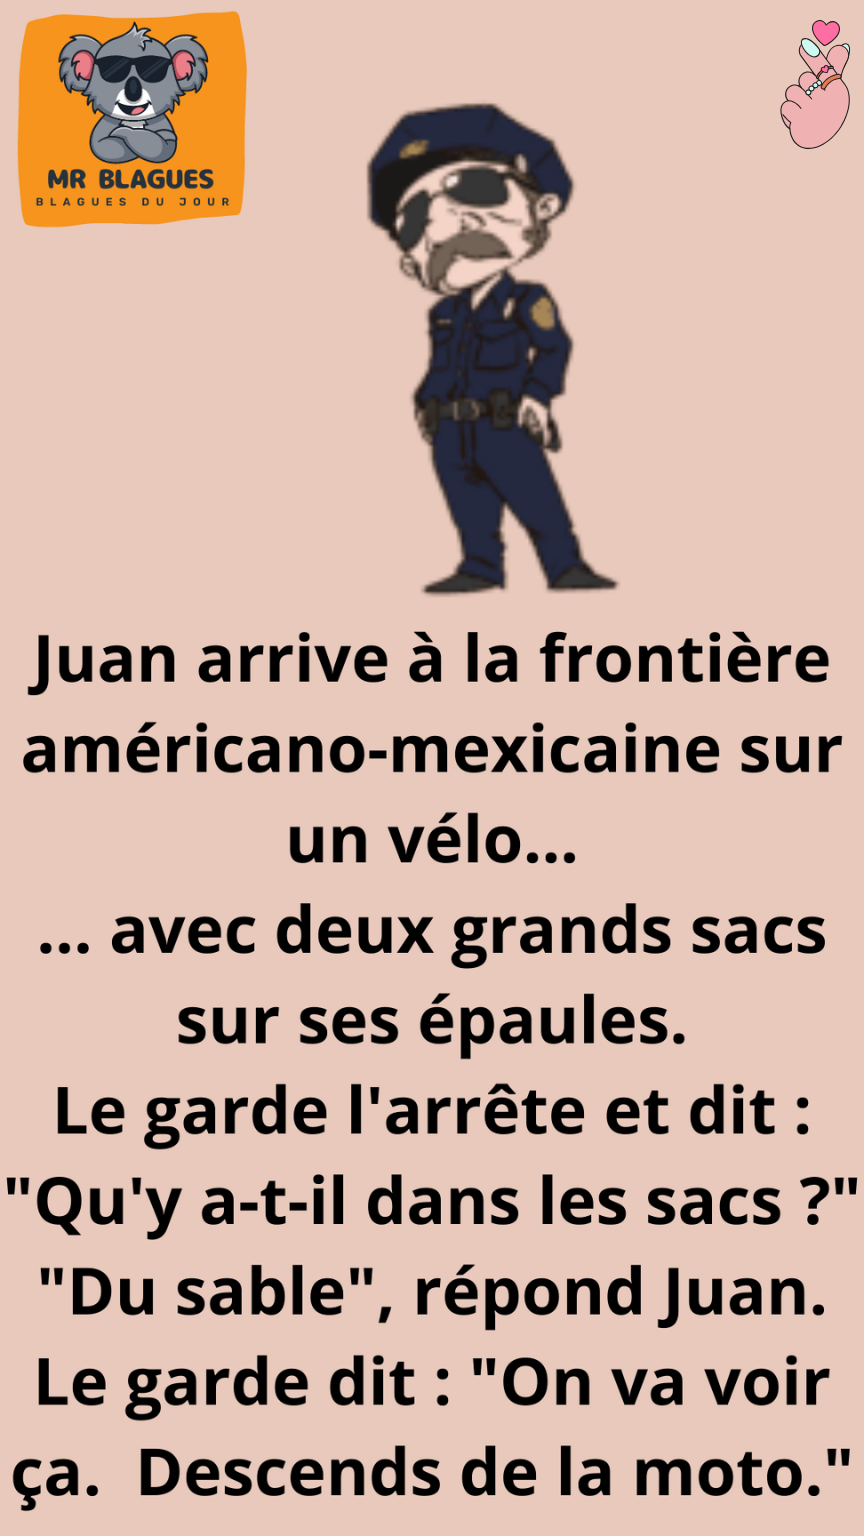 Le garde-frontière américano-mexicain est choqué quand Juan dit cela.